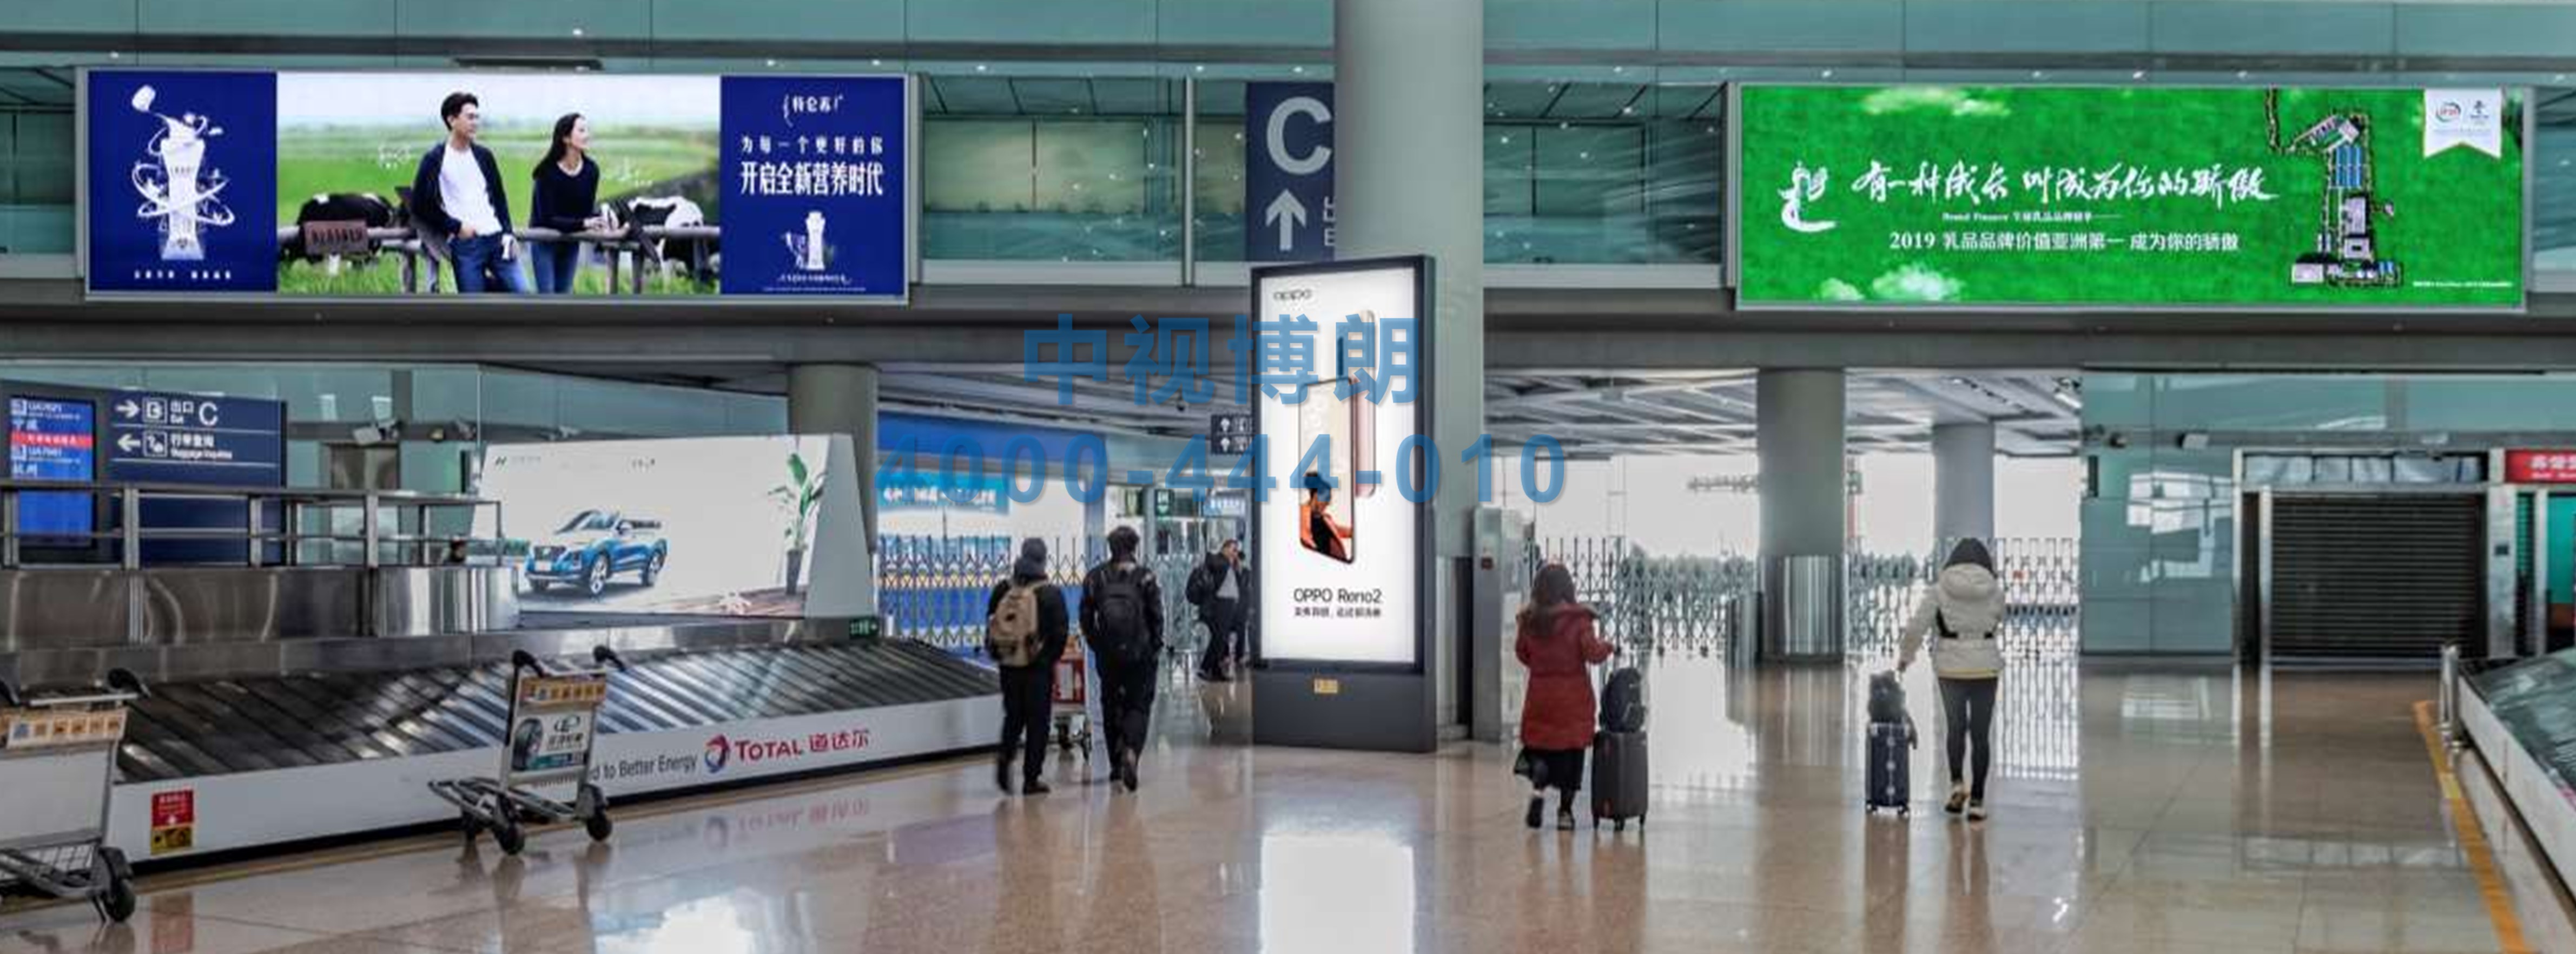 北京首都机场广告-T3到达行李厅正迎面门廊灯箱